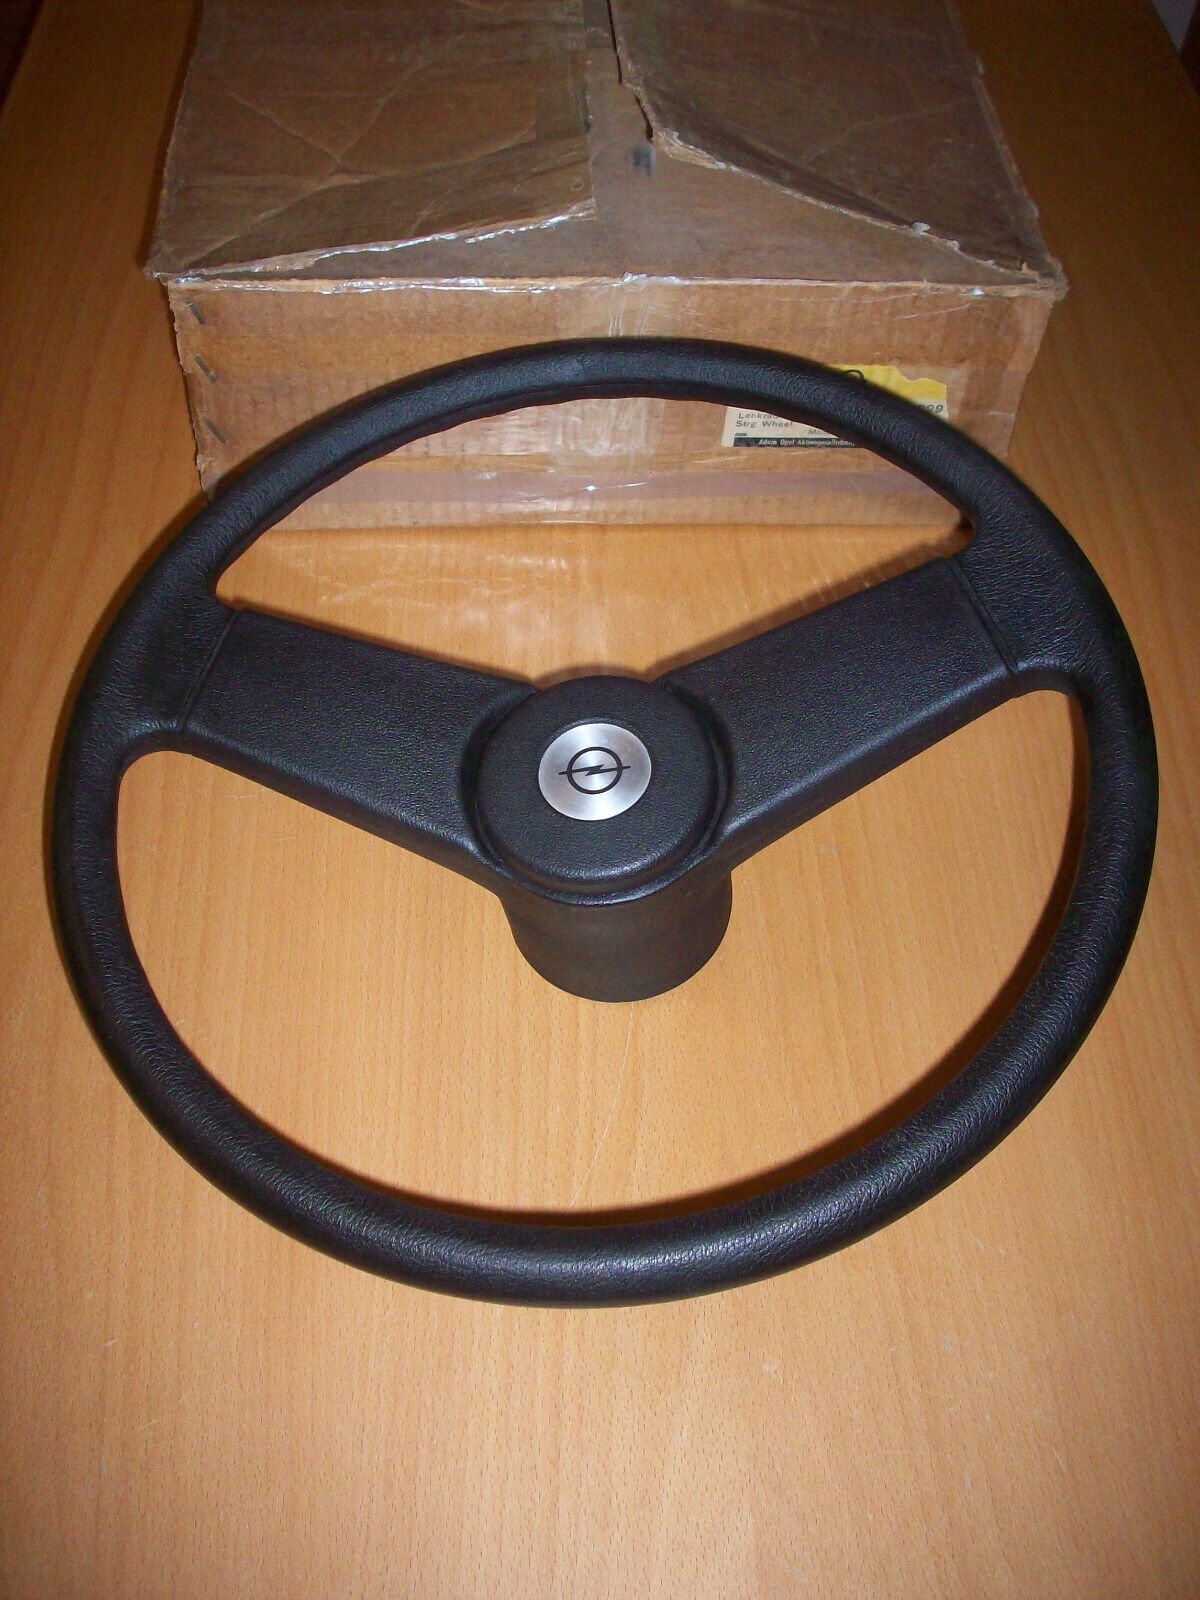 Opel Kadett C steering wheel two spokes in original box